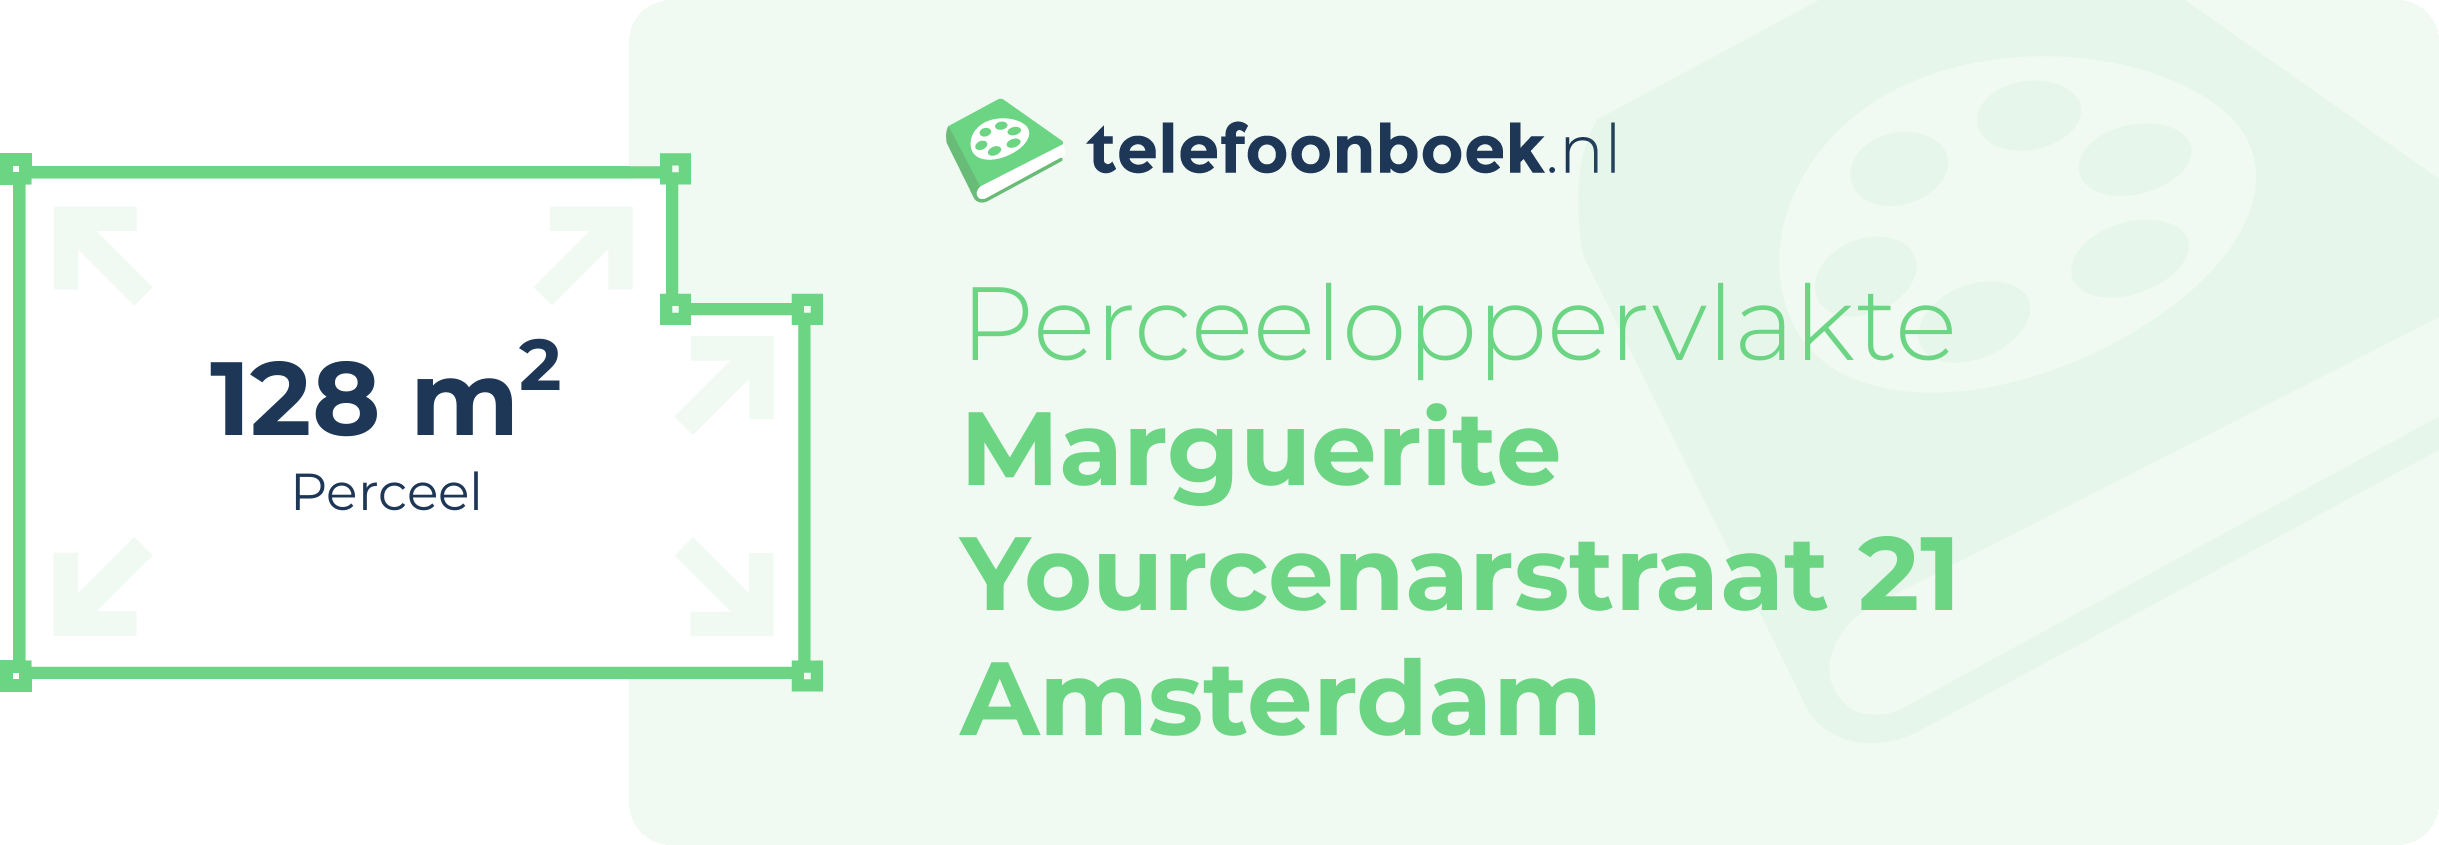 Perceeloppervlakte Marguerite Yourcenarstraat 21 Amsterdam